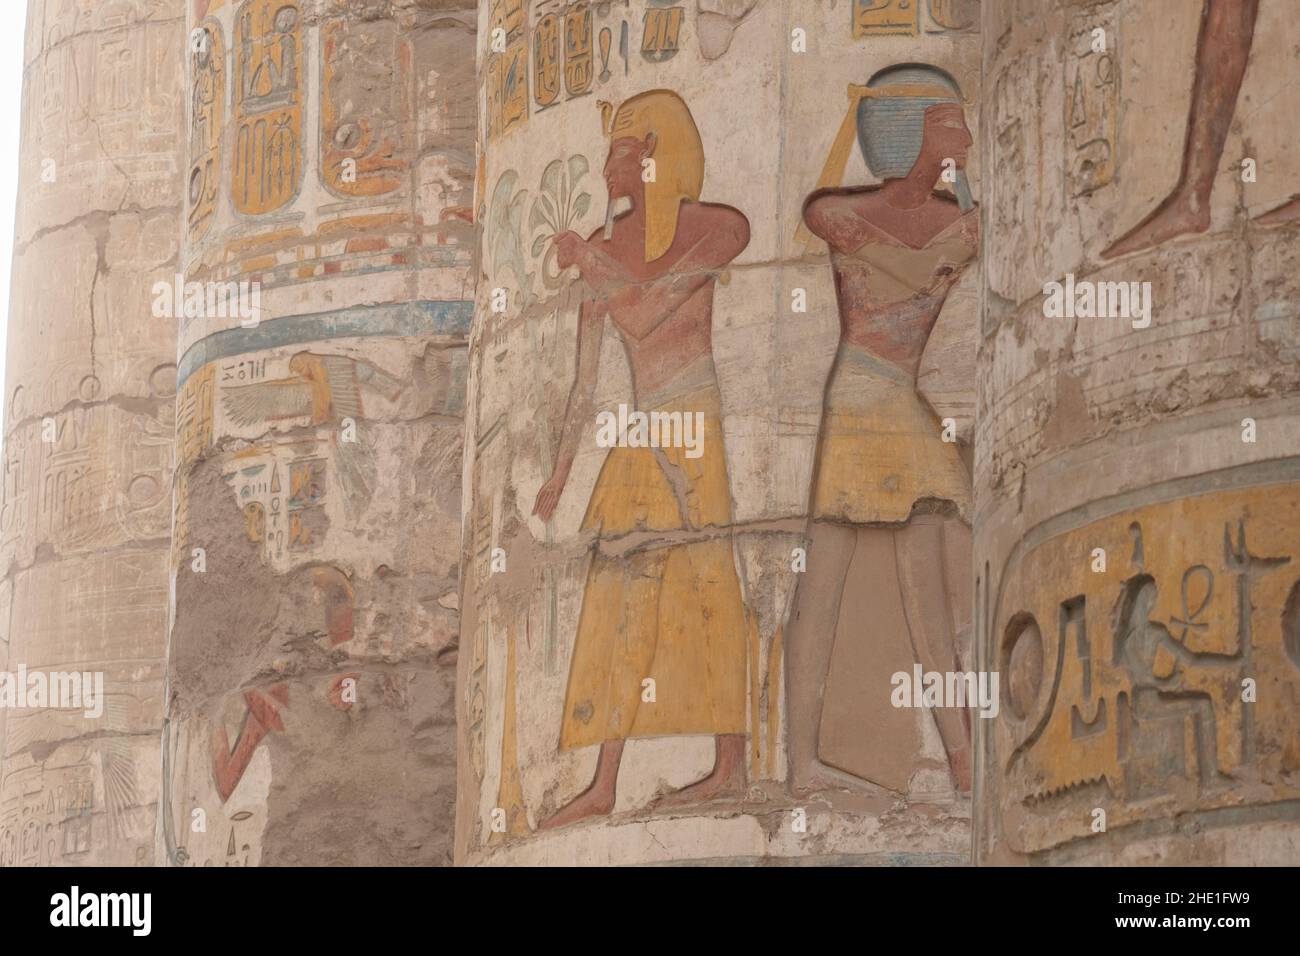 Alte ägyptische Reliefskulpturen, die gut erhalten geblieben sind und auf die Säulen in der Hypostyle-Halle in Karnak, Ägypten, gemalt wurden. Stockfoto